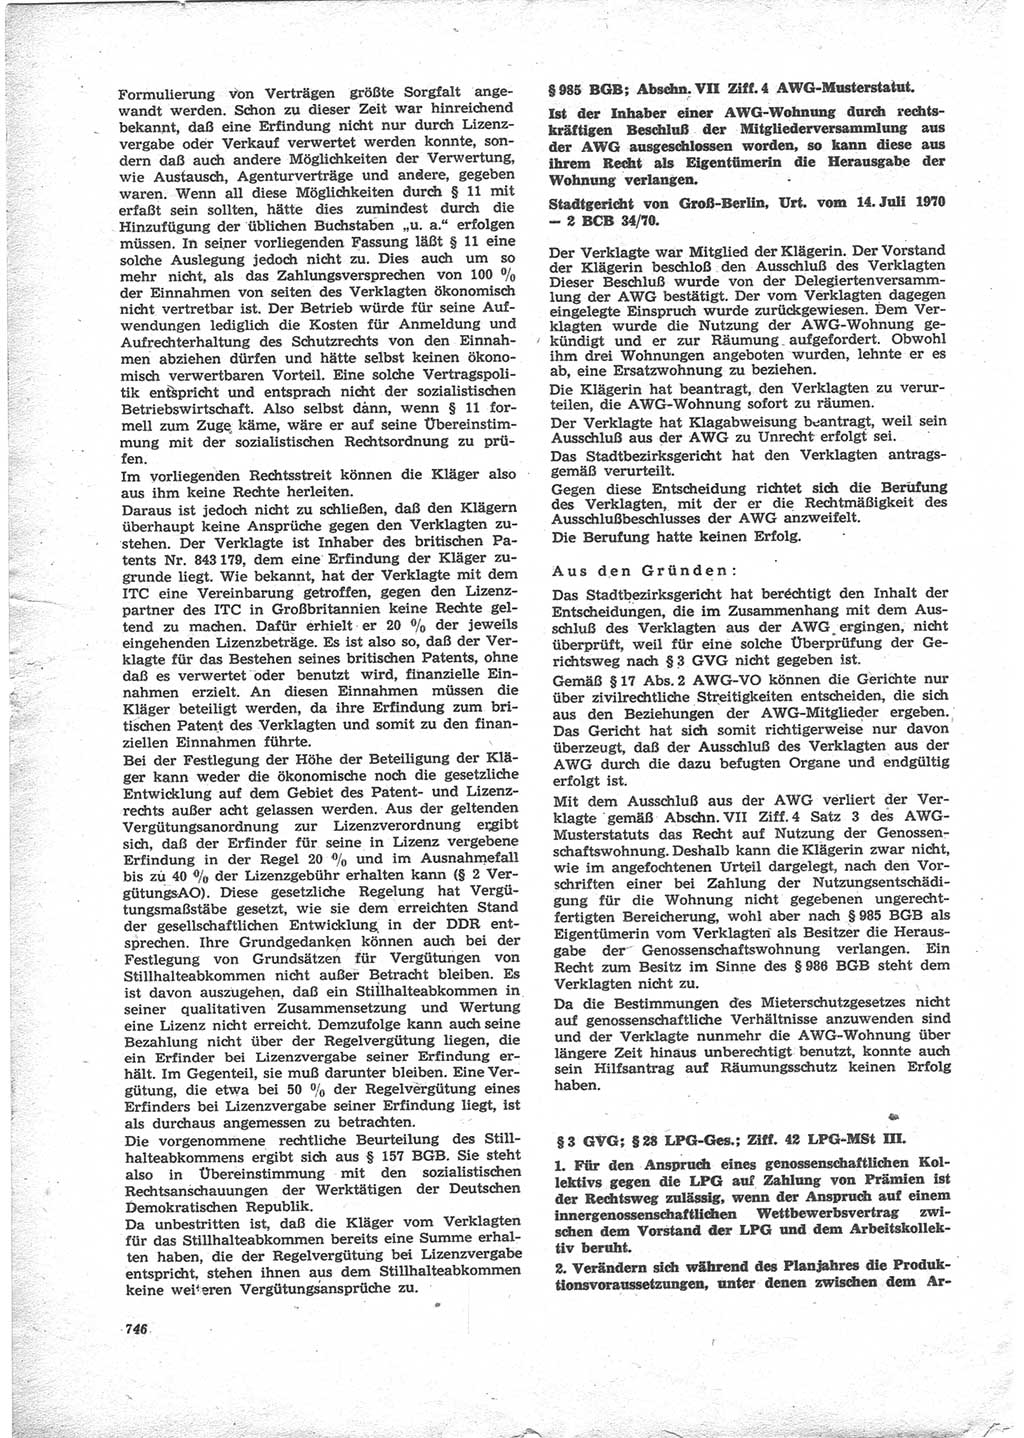 Neue Justiz (NJ), Zeitschrift für Recht und Rechtswissenschaft [Deutsche Demokratische Republik (DDR)], 24. Jahrgang 1970, Seite 746 (NJ DDR 1970, S. 746)